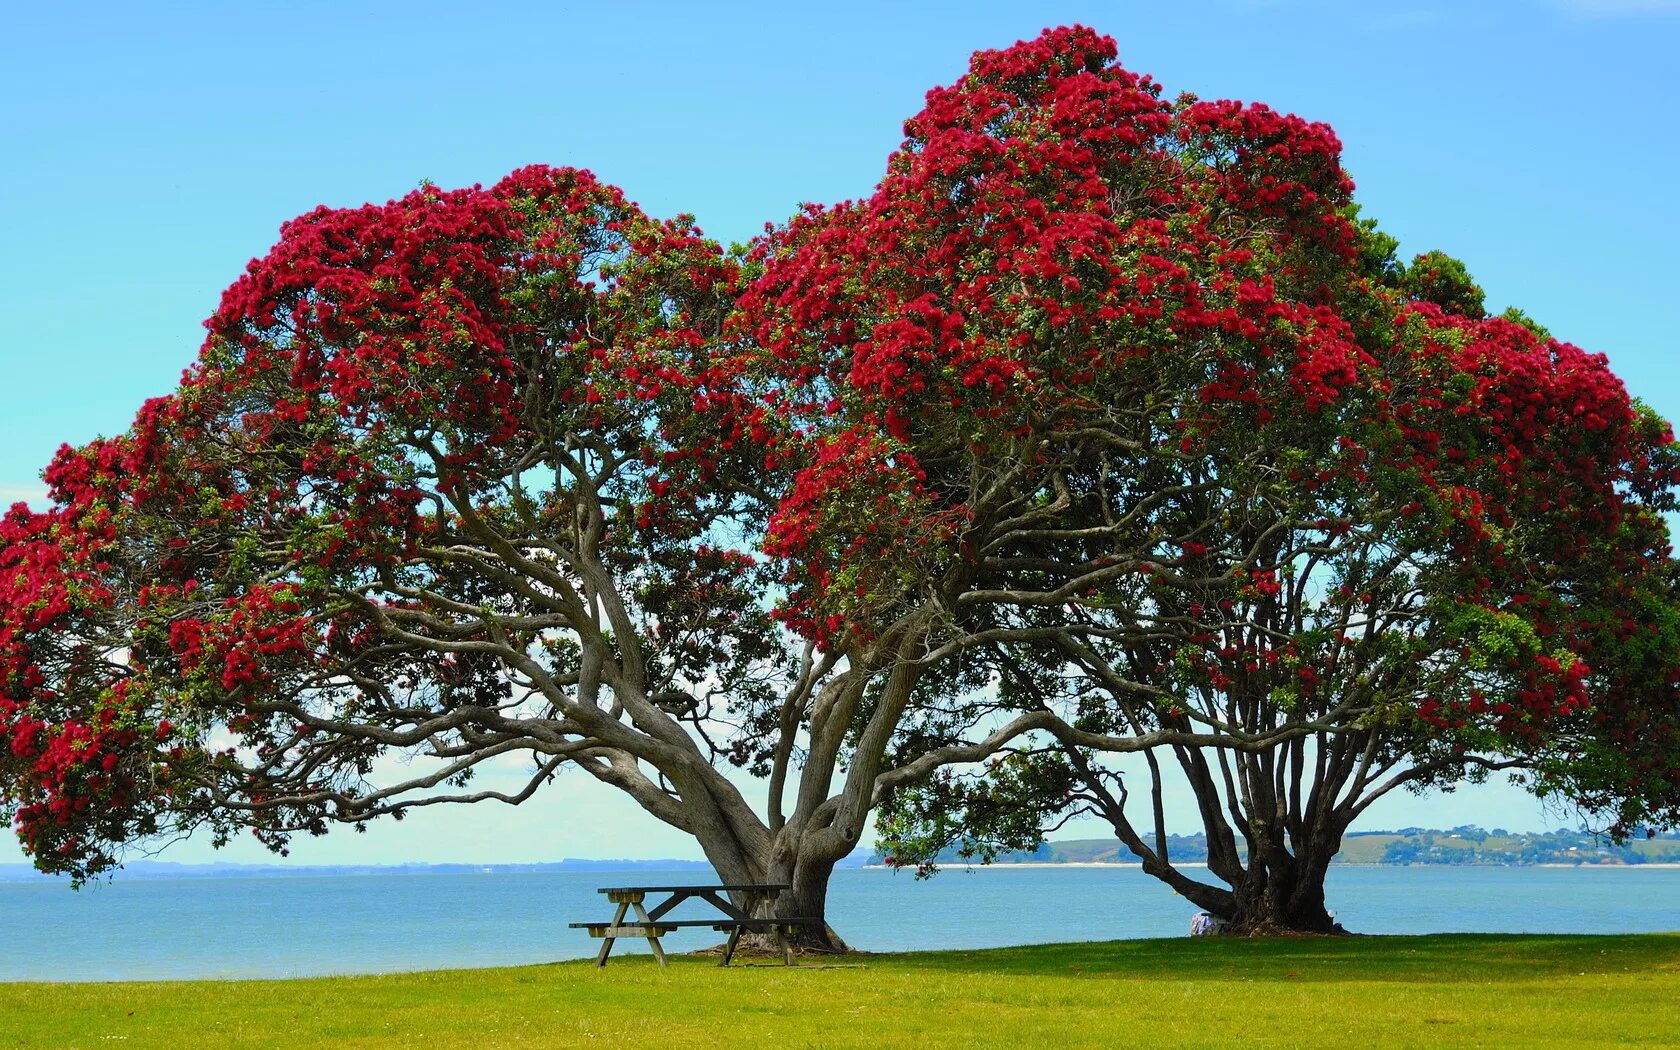 Метросидерос зонтичный. Новая Зеландия цветы Похутукава. Метросидерос холмовой. Дерево в новой Зеландии Похутукава.